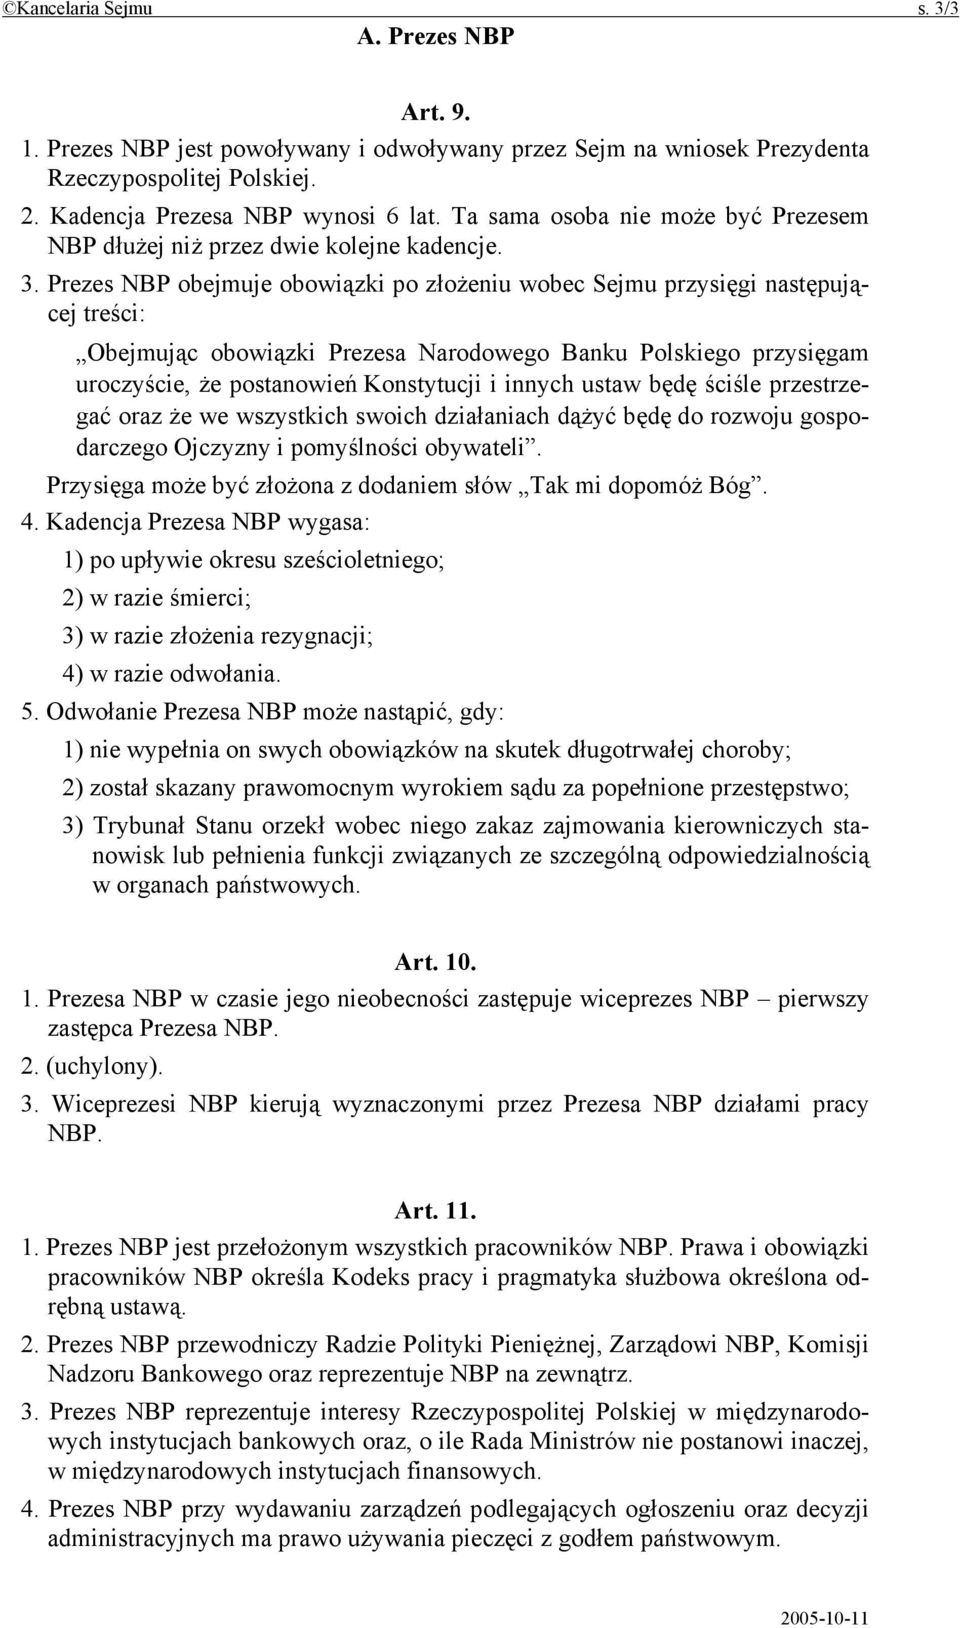 Prezes NBP obejmuje obowiązki po złożeniu wobec Sejmu przysięgi następującej treści: Obejmując obowiązki Prezesa Narodowego Banku Polskiego przysięgam uroczyście, że postanowień Konstytucji i innych